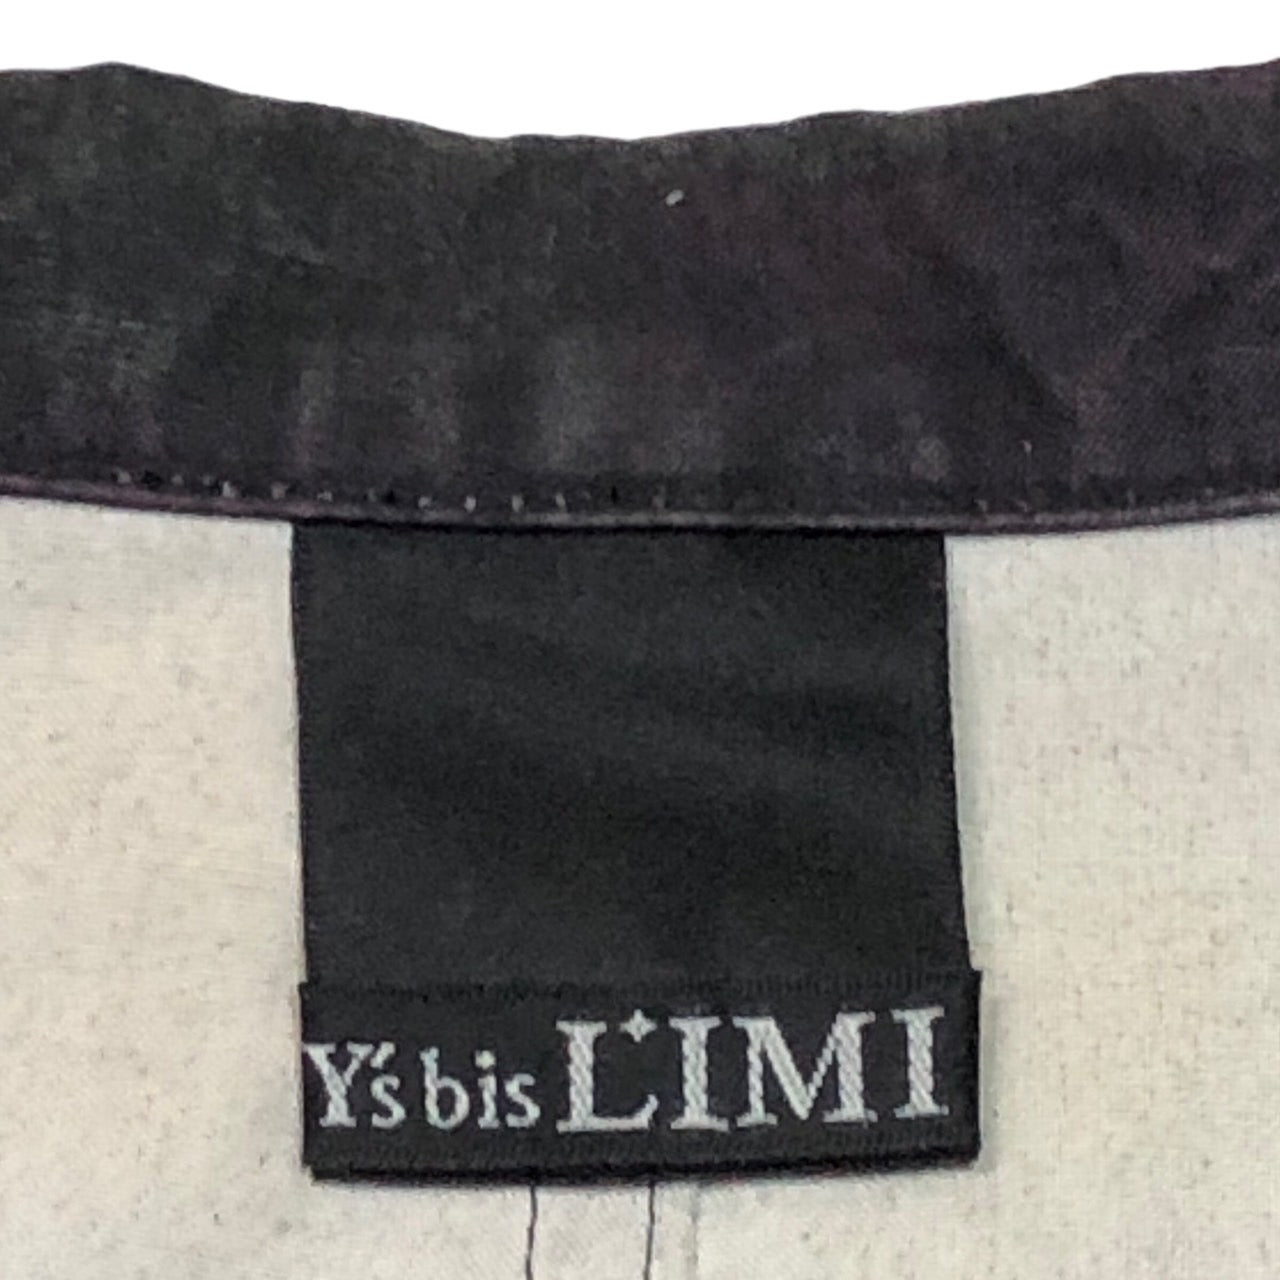 Y's bis LIMI(ワイズビスリミ) 02SS graphic cotton jacket